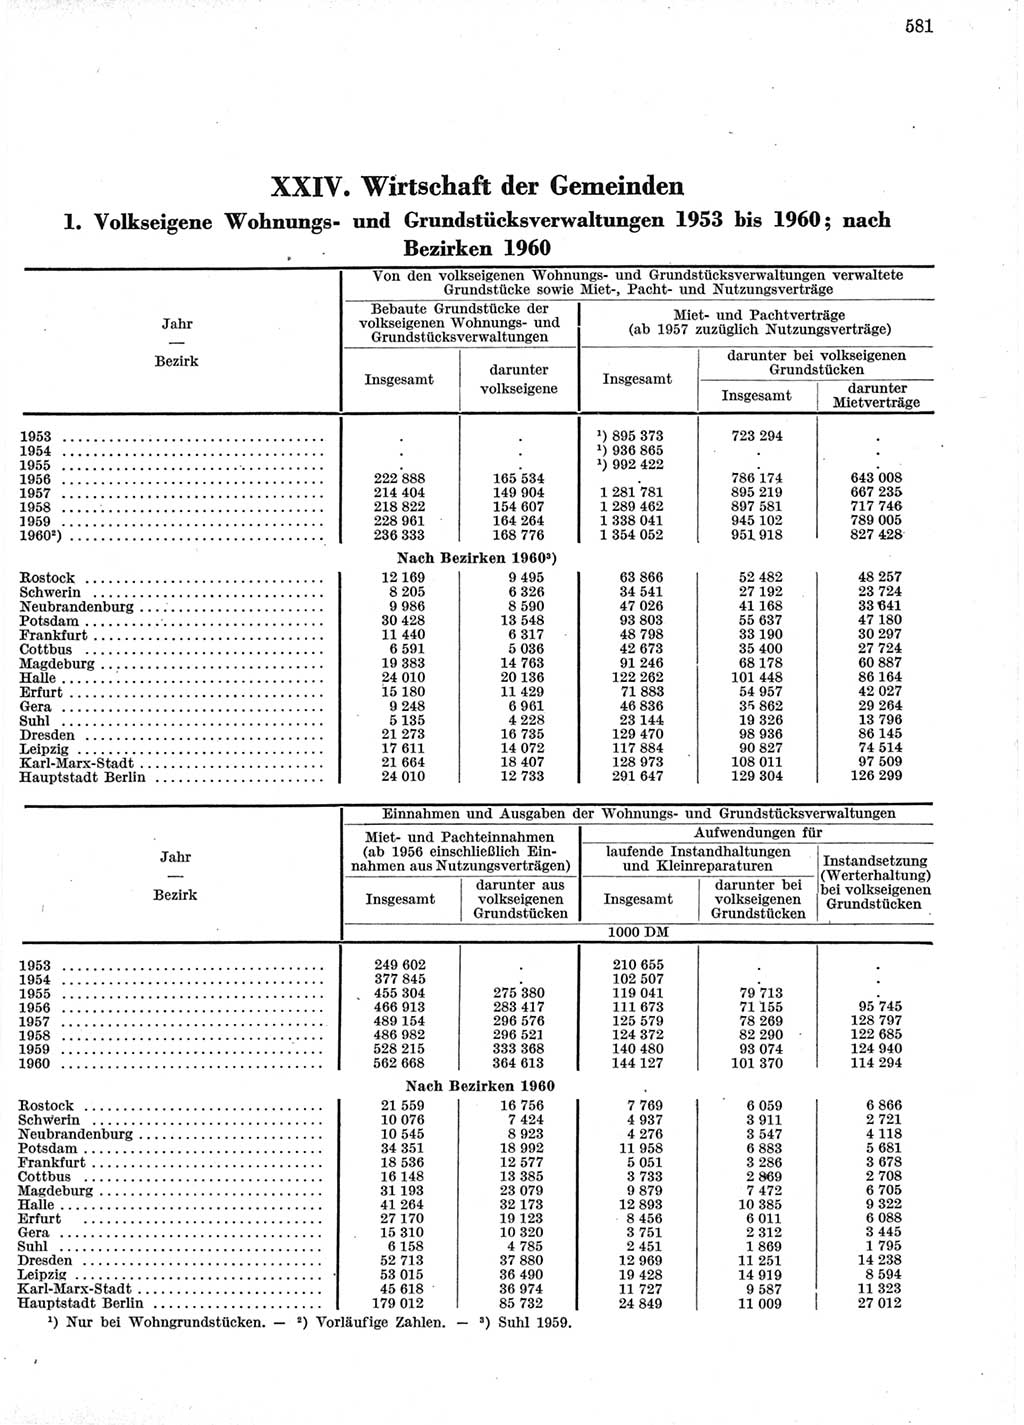 Statistisches Jahrbuch der Deutschen Demokratischen Republik (DDR) 1960-1961, Seite 581 (Stat. Jb. DDR 1960-1961, S. 581)